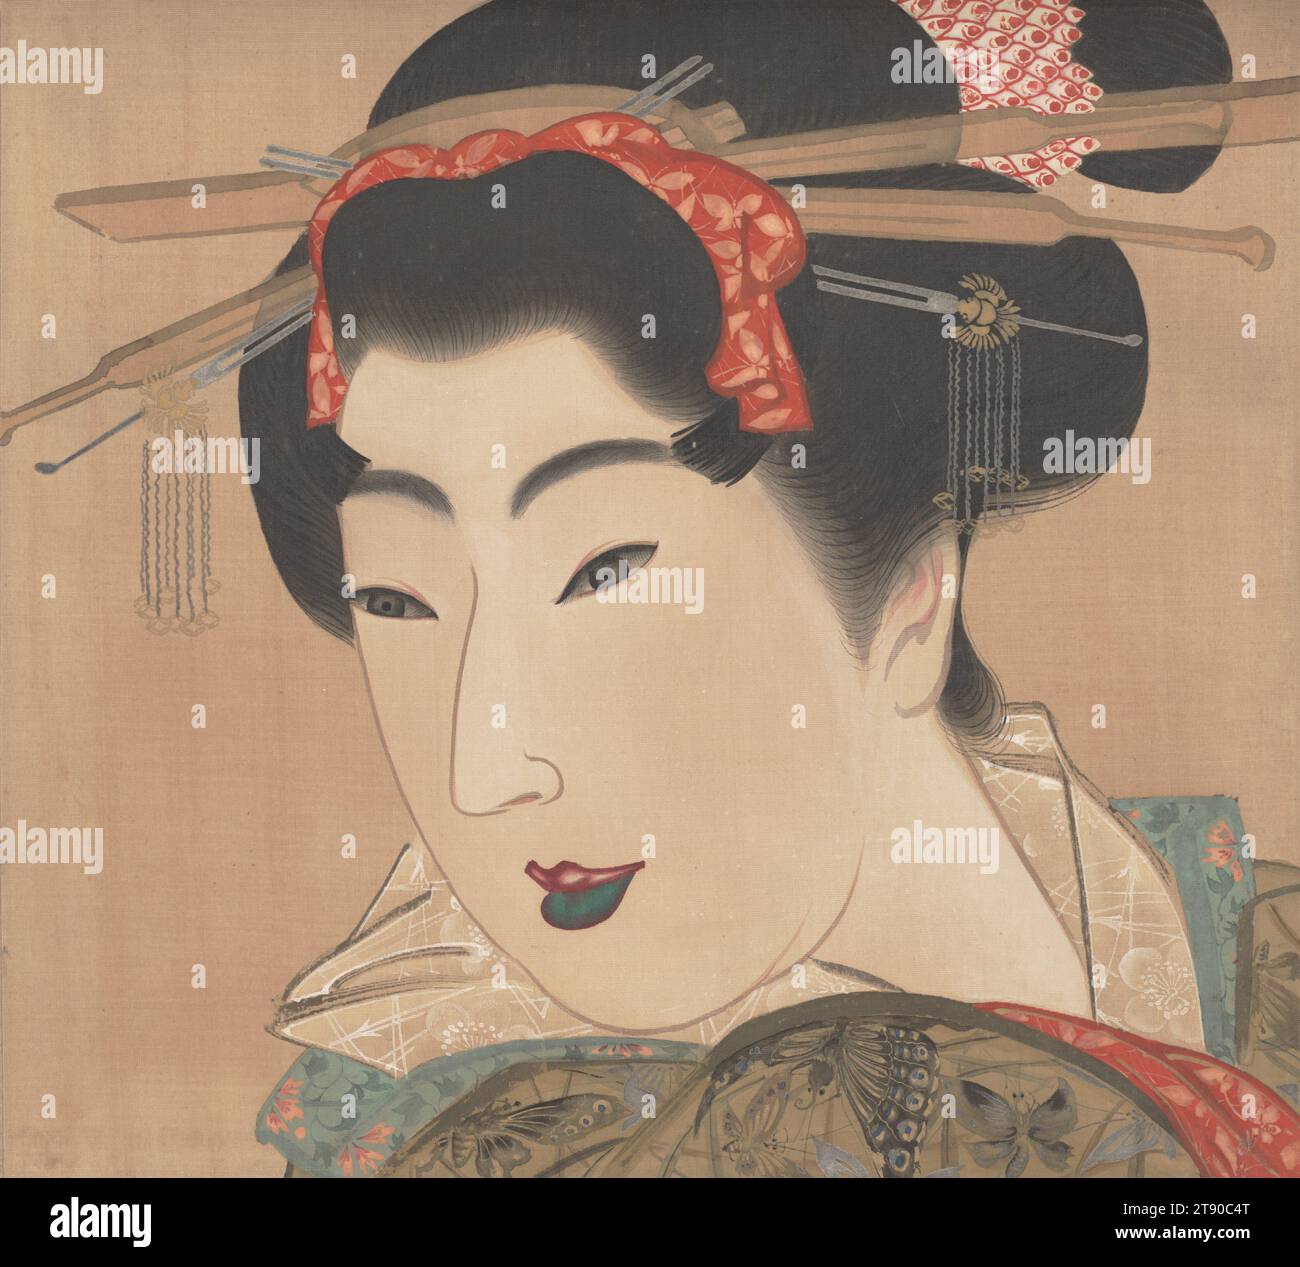 Geisha derecha de un tríptico de tres bellezas, años 1830, Mihata Jōryū, japonés, acto. 1830s, 10 3/8 x 11 7/16 in. (26,35 x 29,05 cm) (imagen)55 3/8 x 25 5/16 in. (140,65 x 64,29 cm) (montaje, sin rodillo), Tinta y color sobre seda, Japón, Nikuhitsu ukiyo-e Foto de stock